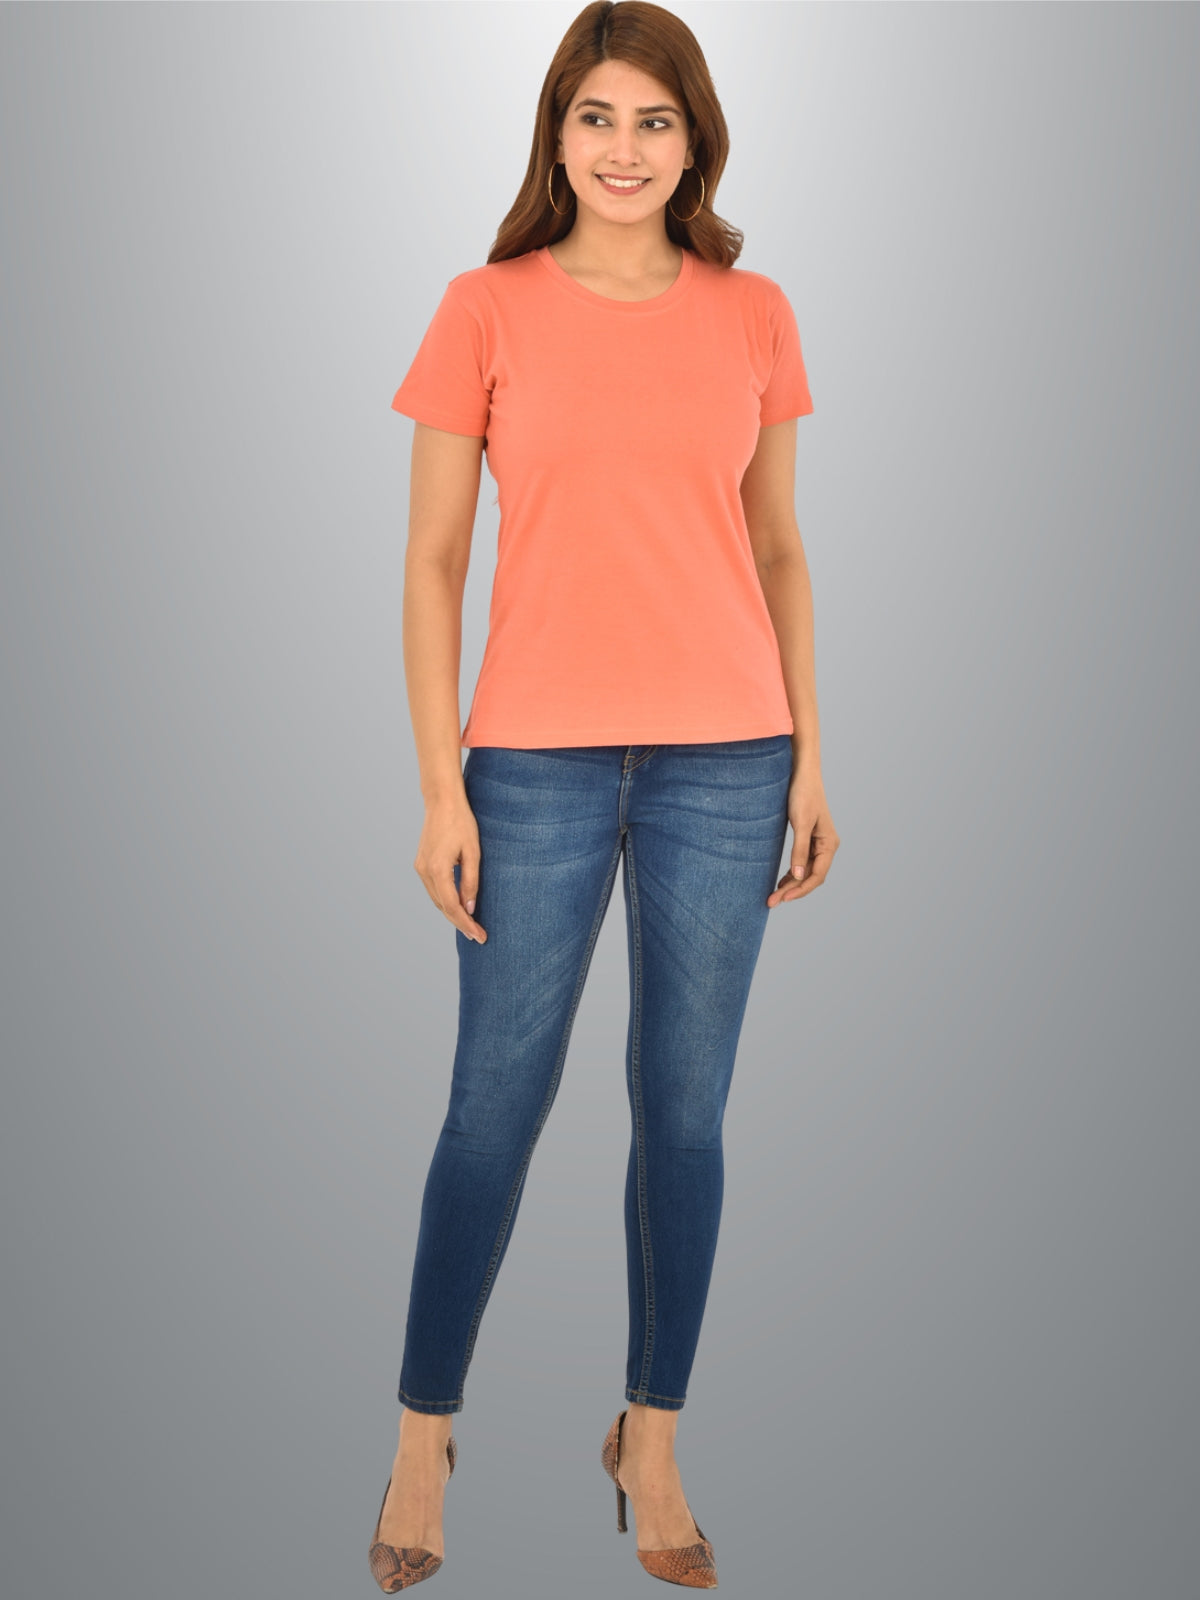 Womens Peach Half Sleeves Cotton Plain T-shirt